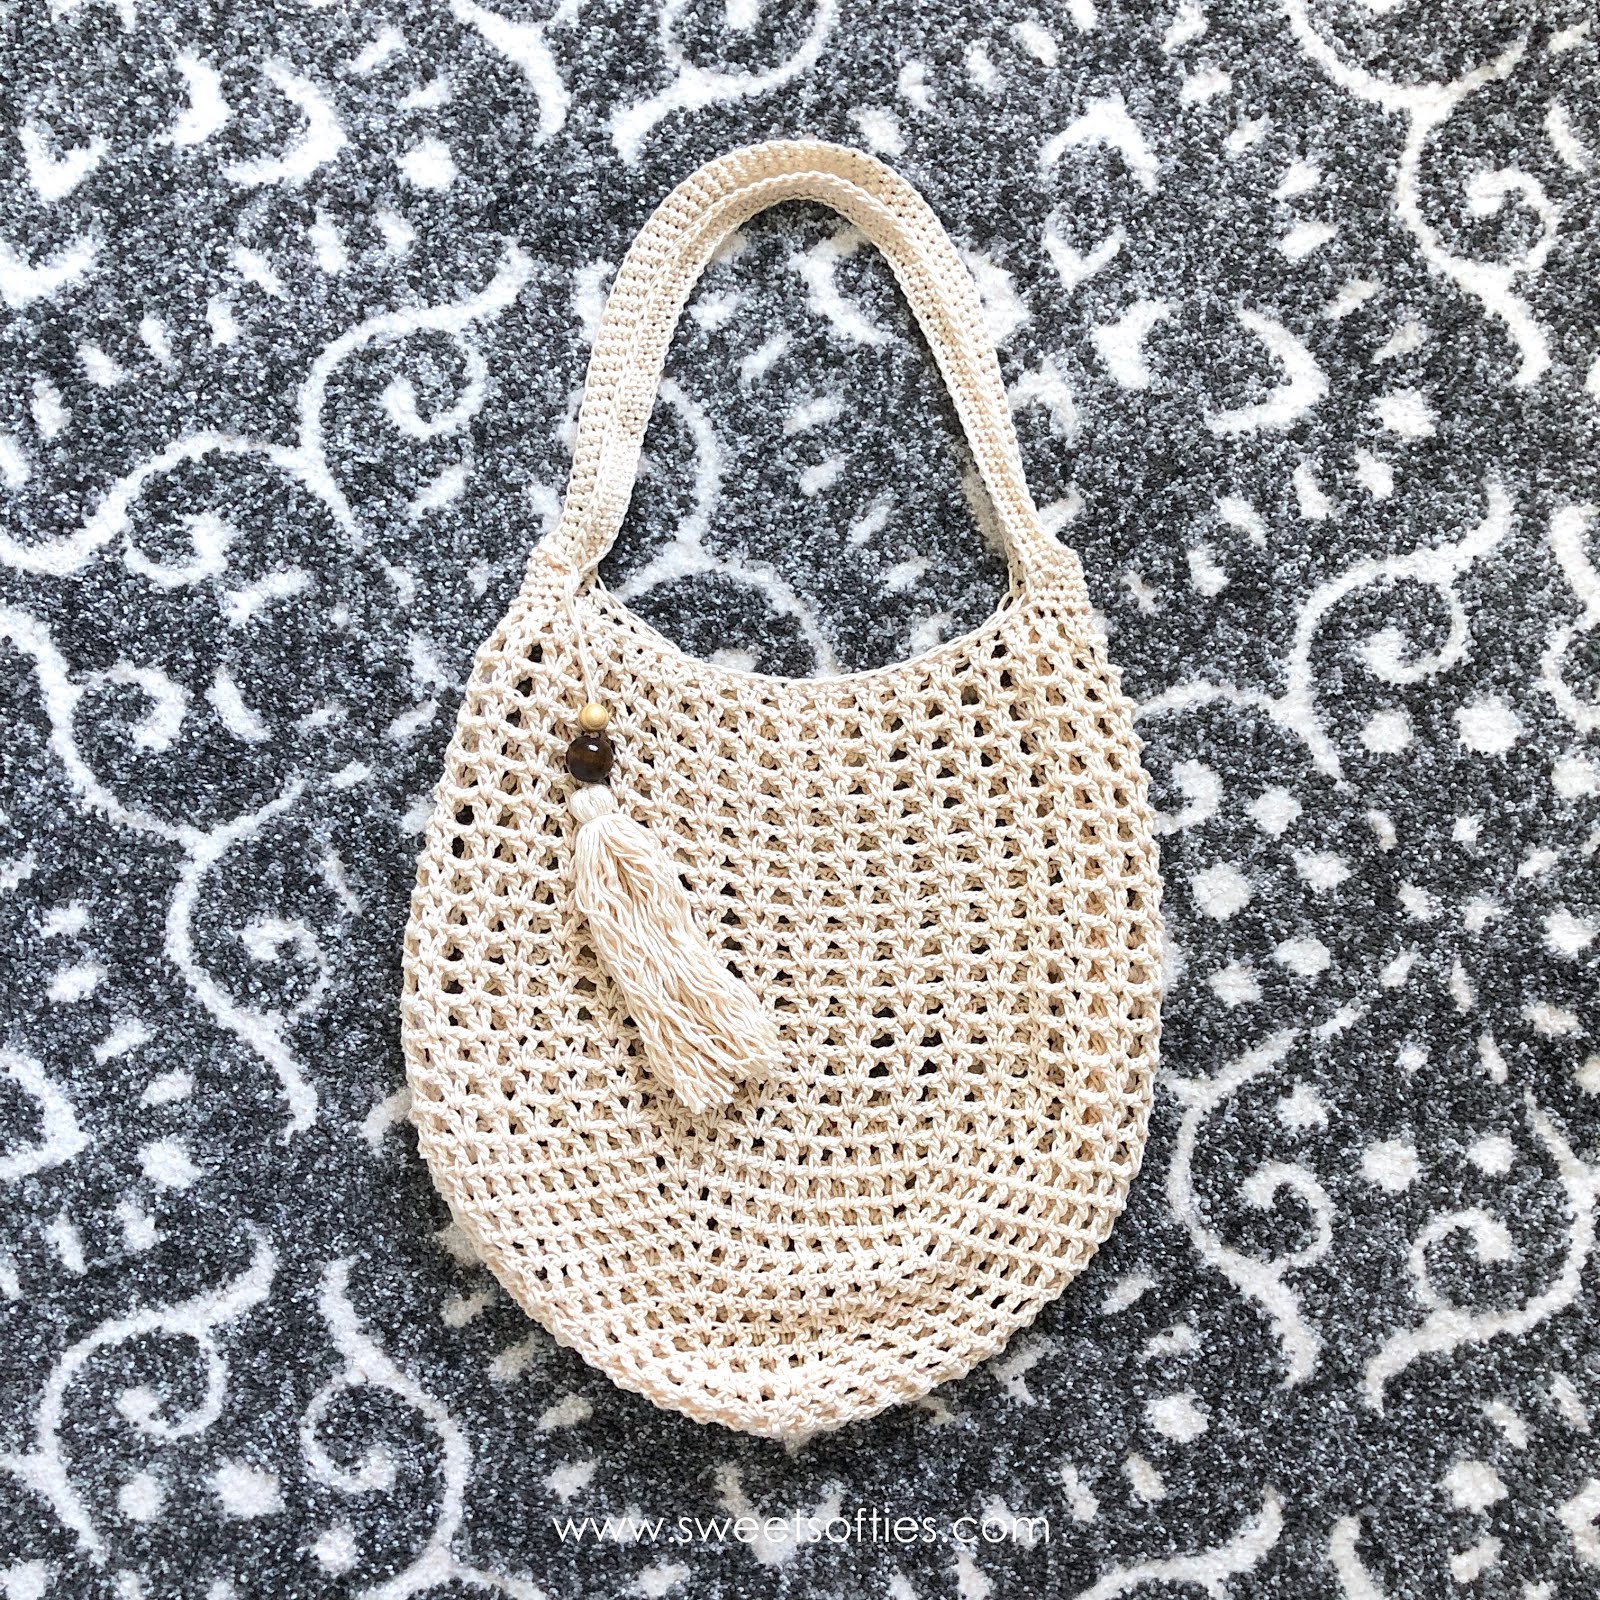 Mini Crochet Backpack - Celtic Knot Crochet